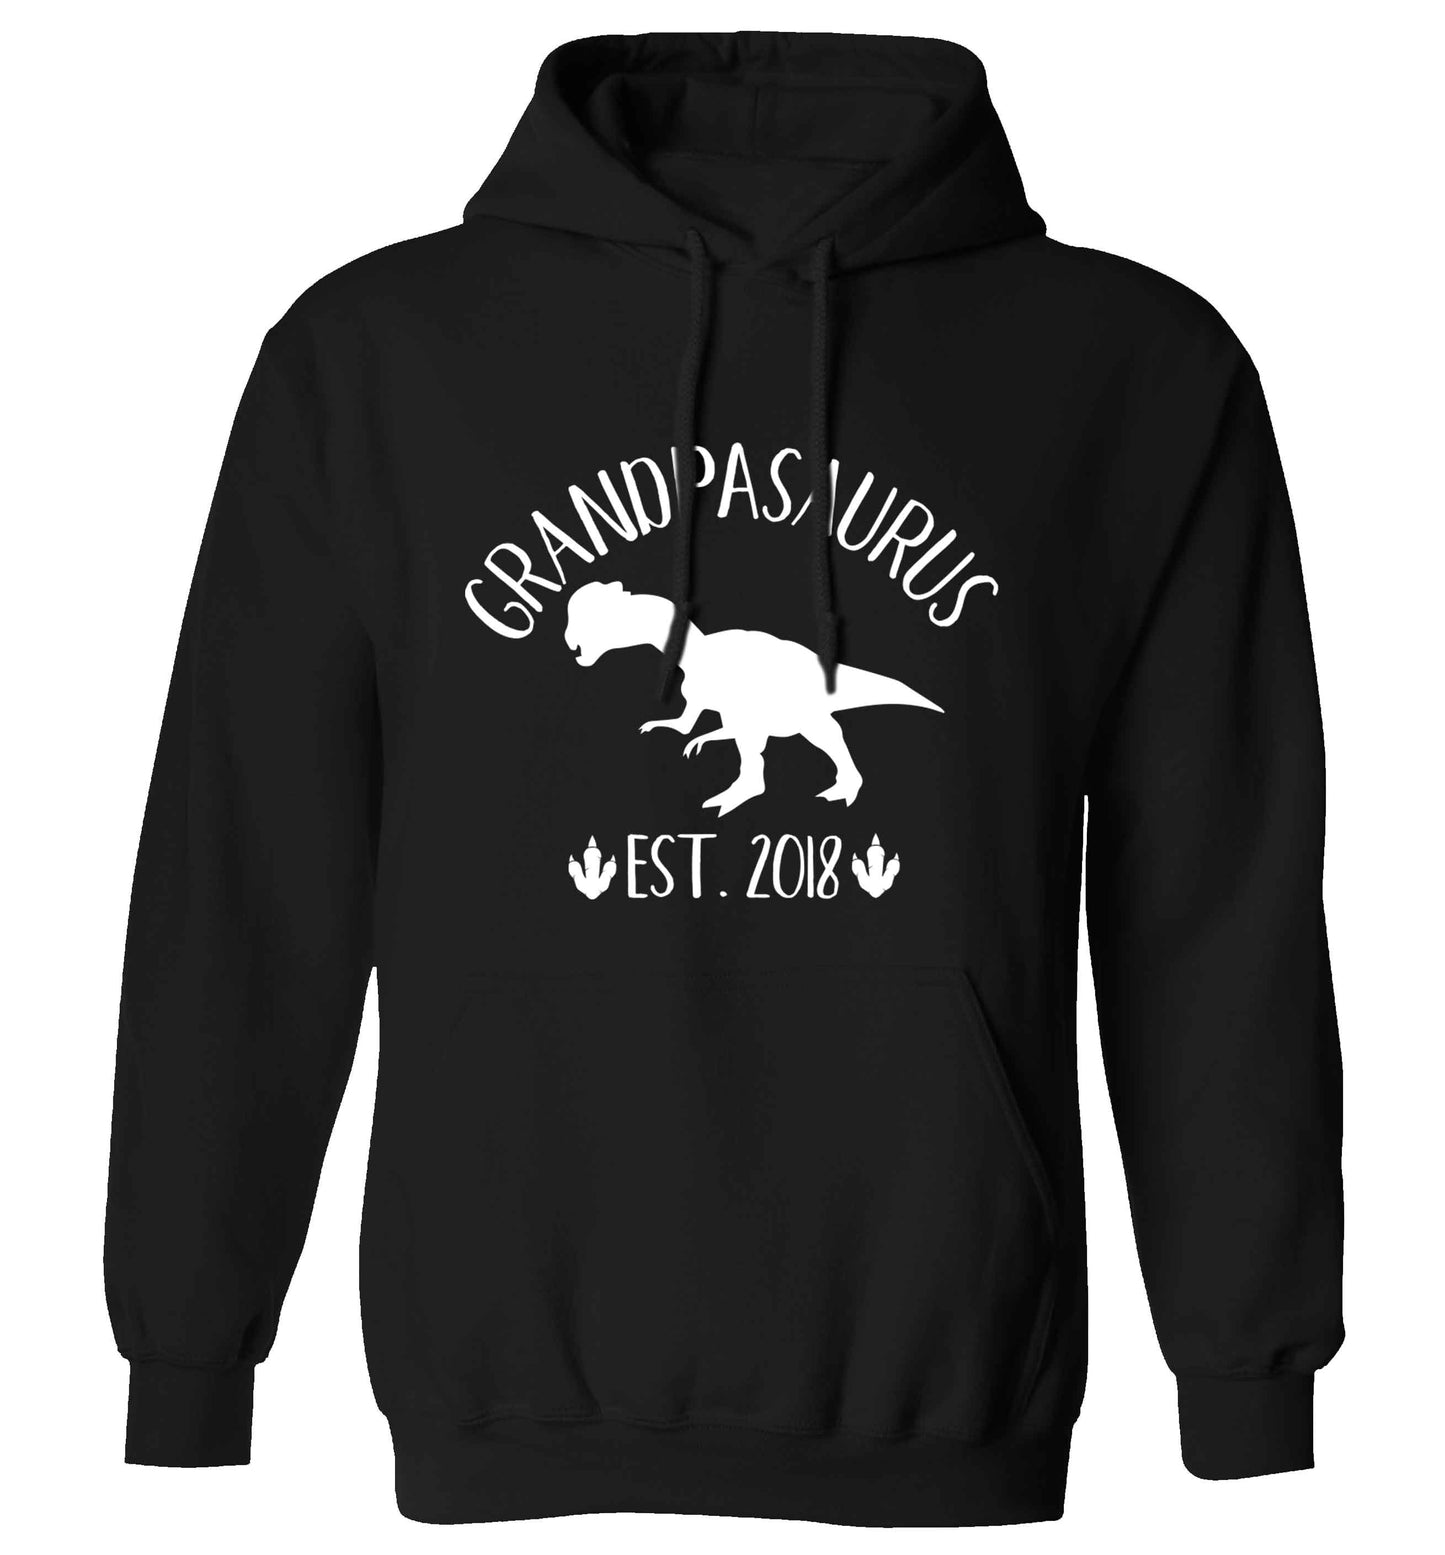 Personalised grandpasaurus since (custom date) adults unisex black hoodie 2XL